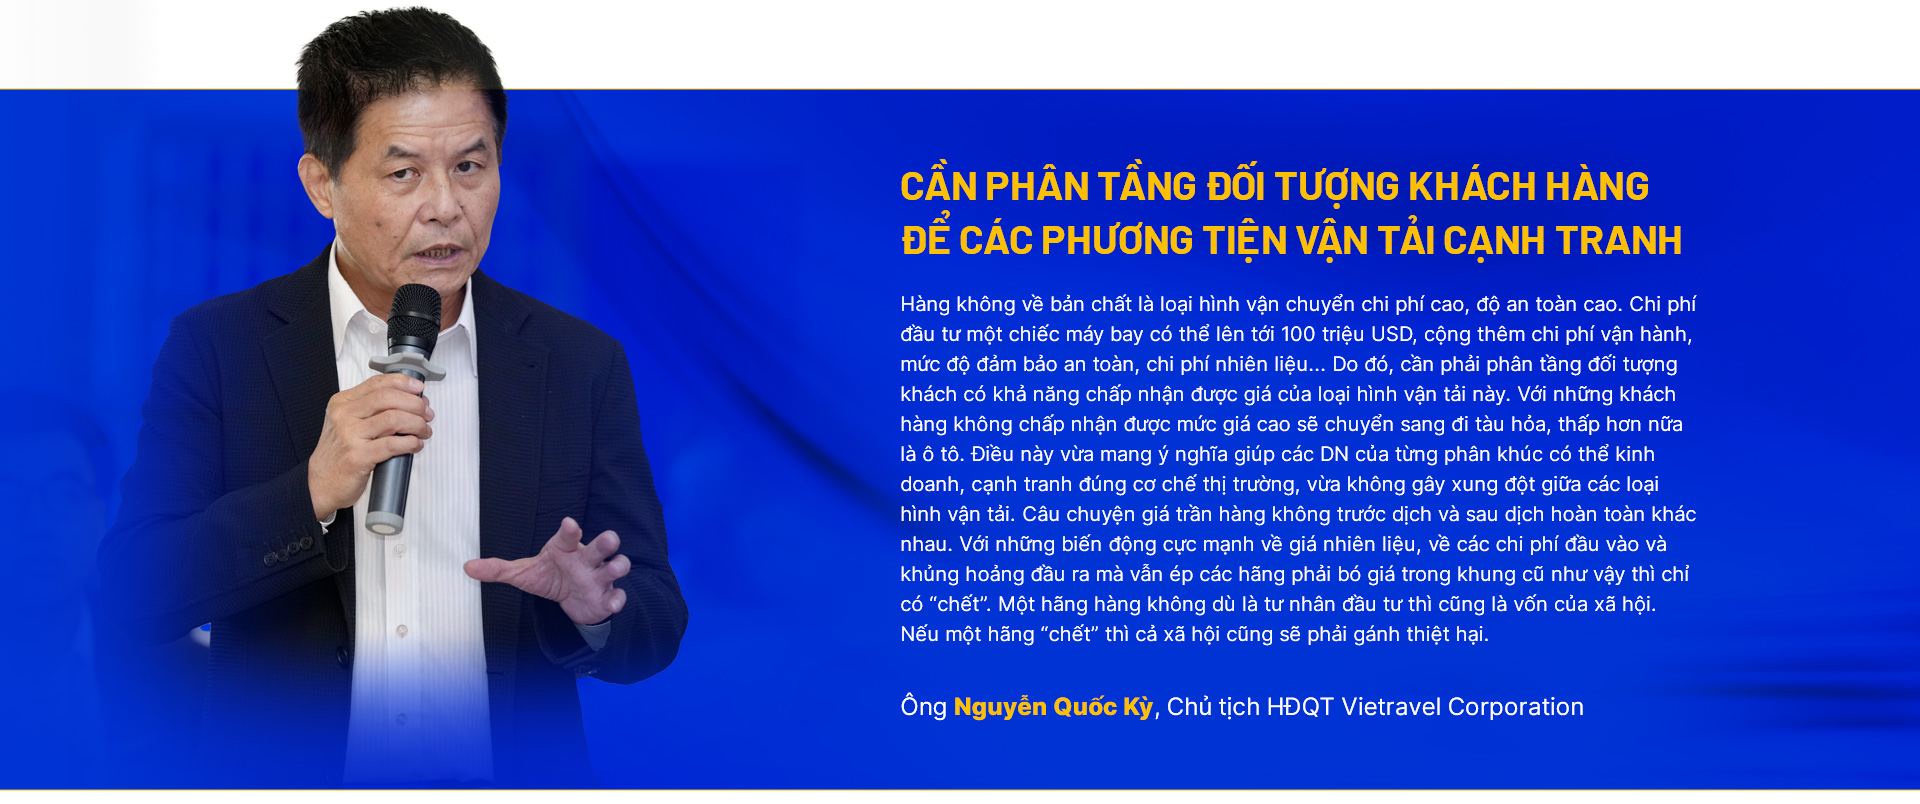 Chủ tịch HÐQT Vietravel Corporation Nguyễn Quốc Kỳ: Khó mấy Vietravel Airlines cũng phải bay  - Ảnh 2.